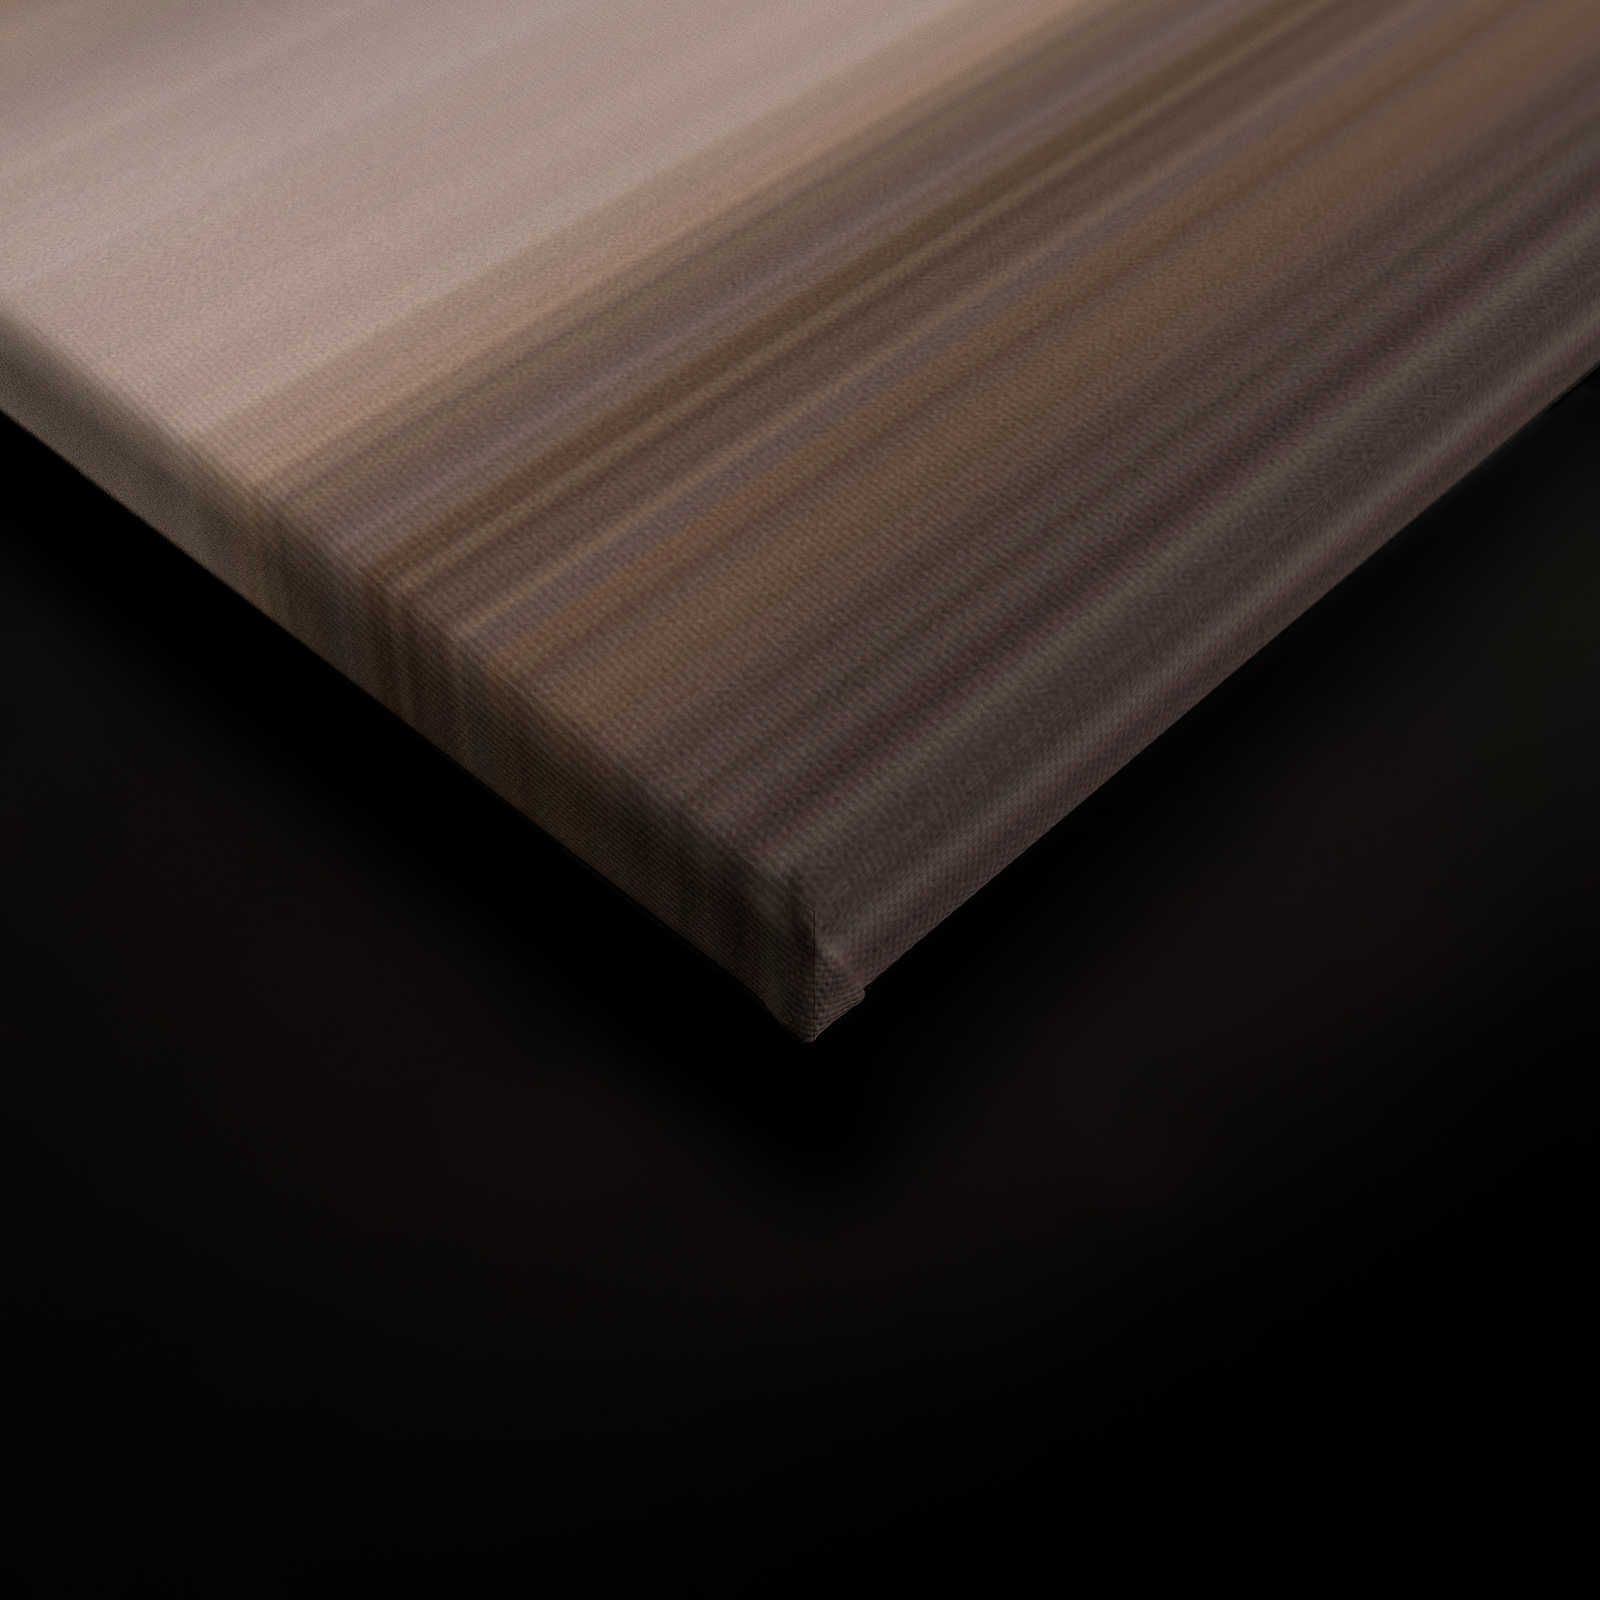             Horizon 2 - Quadro su tela con paesaggio astratto e linee - 0,90 m x 0,60 m
        